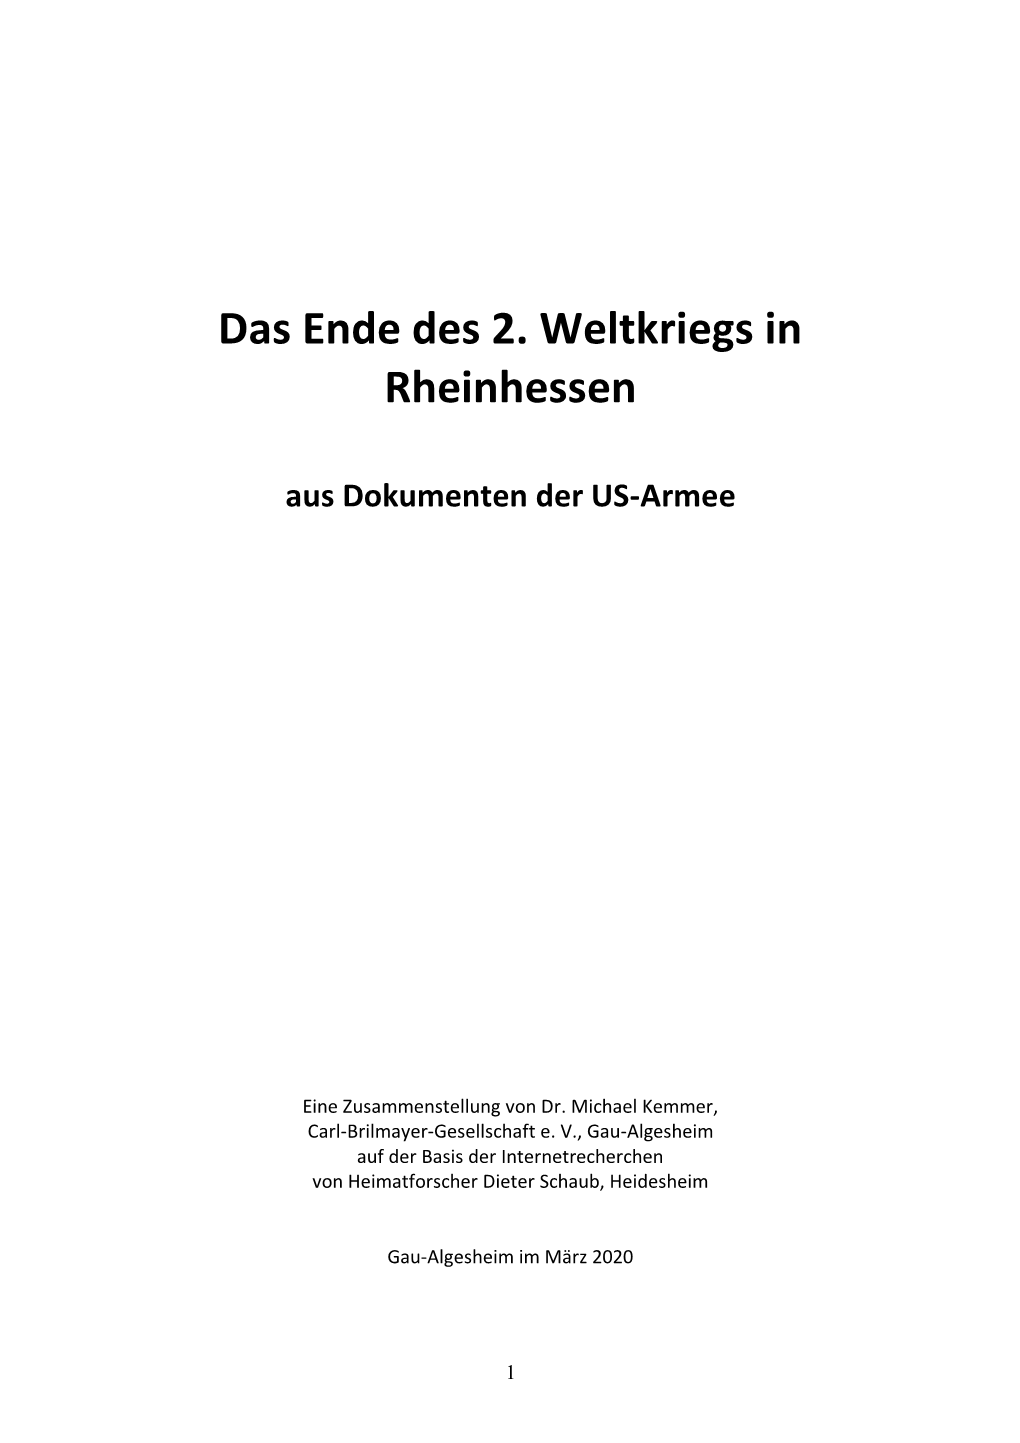 Das Ende Des 2. Weltkriegs in Rheinhessen